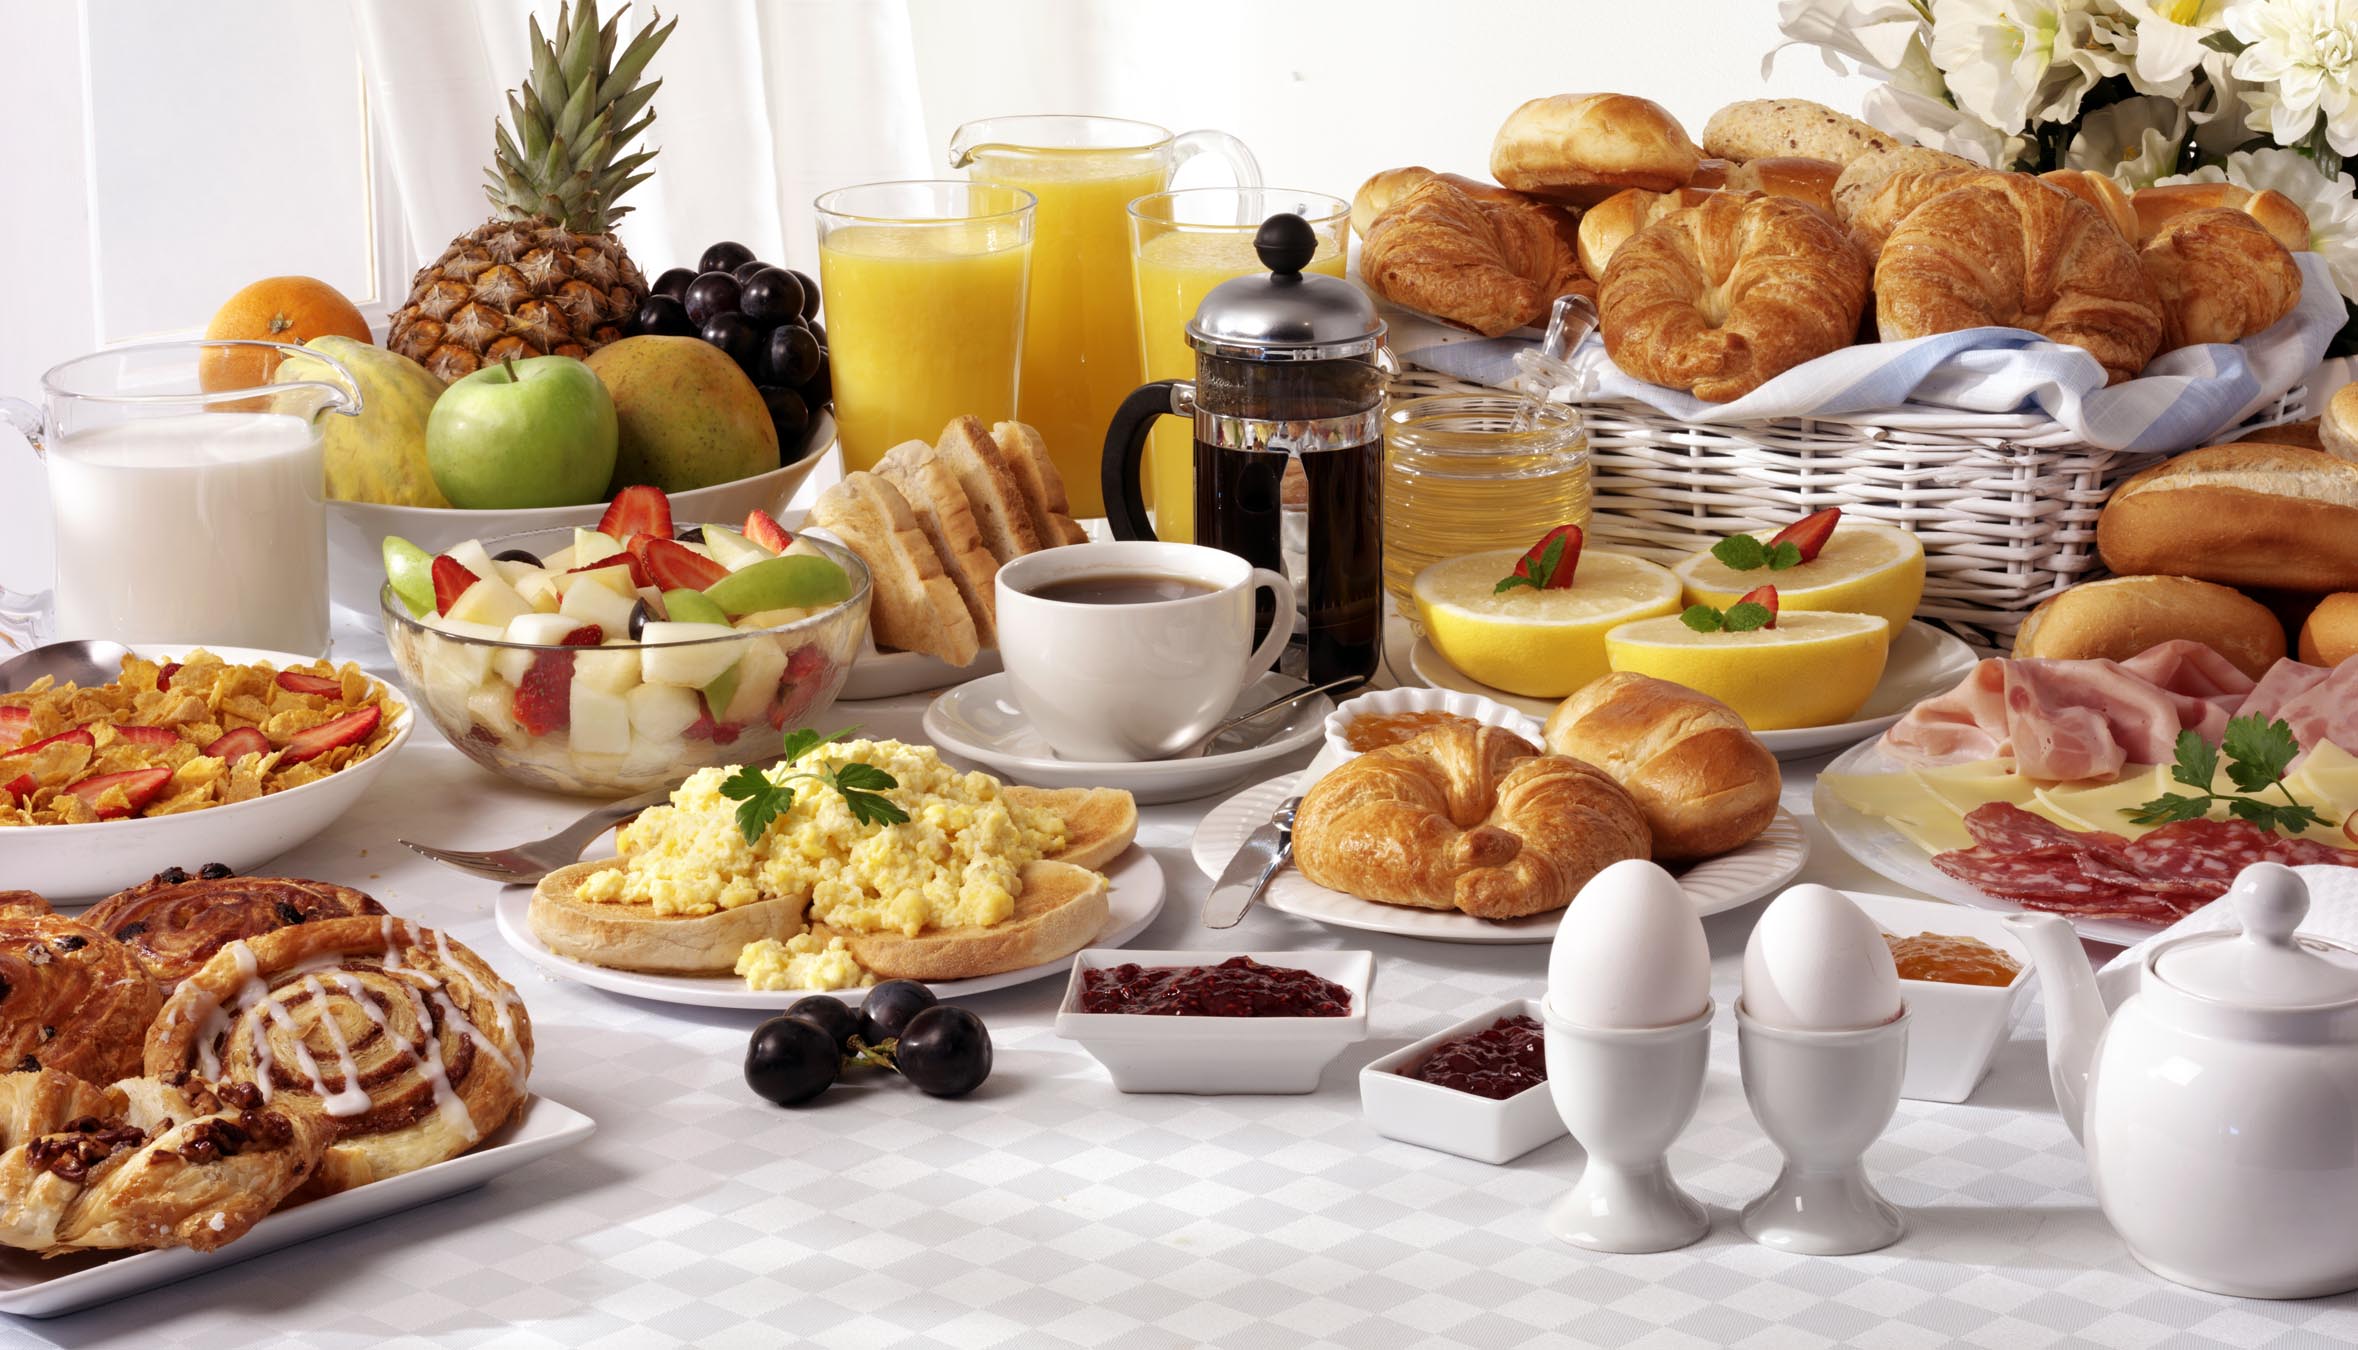 breakfast buffet spread